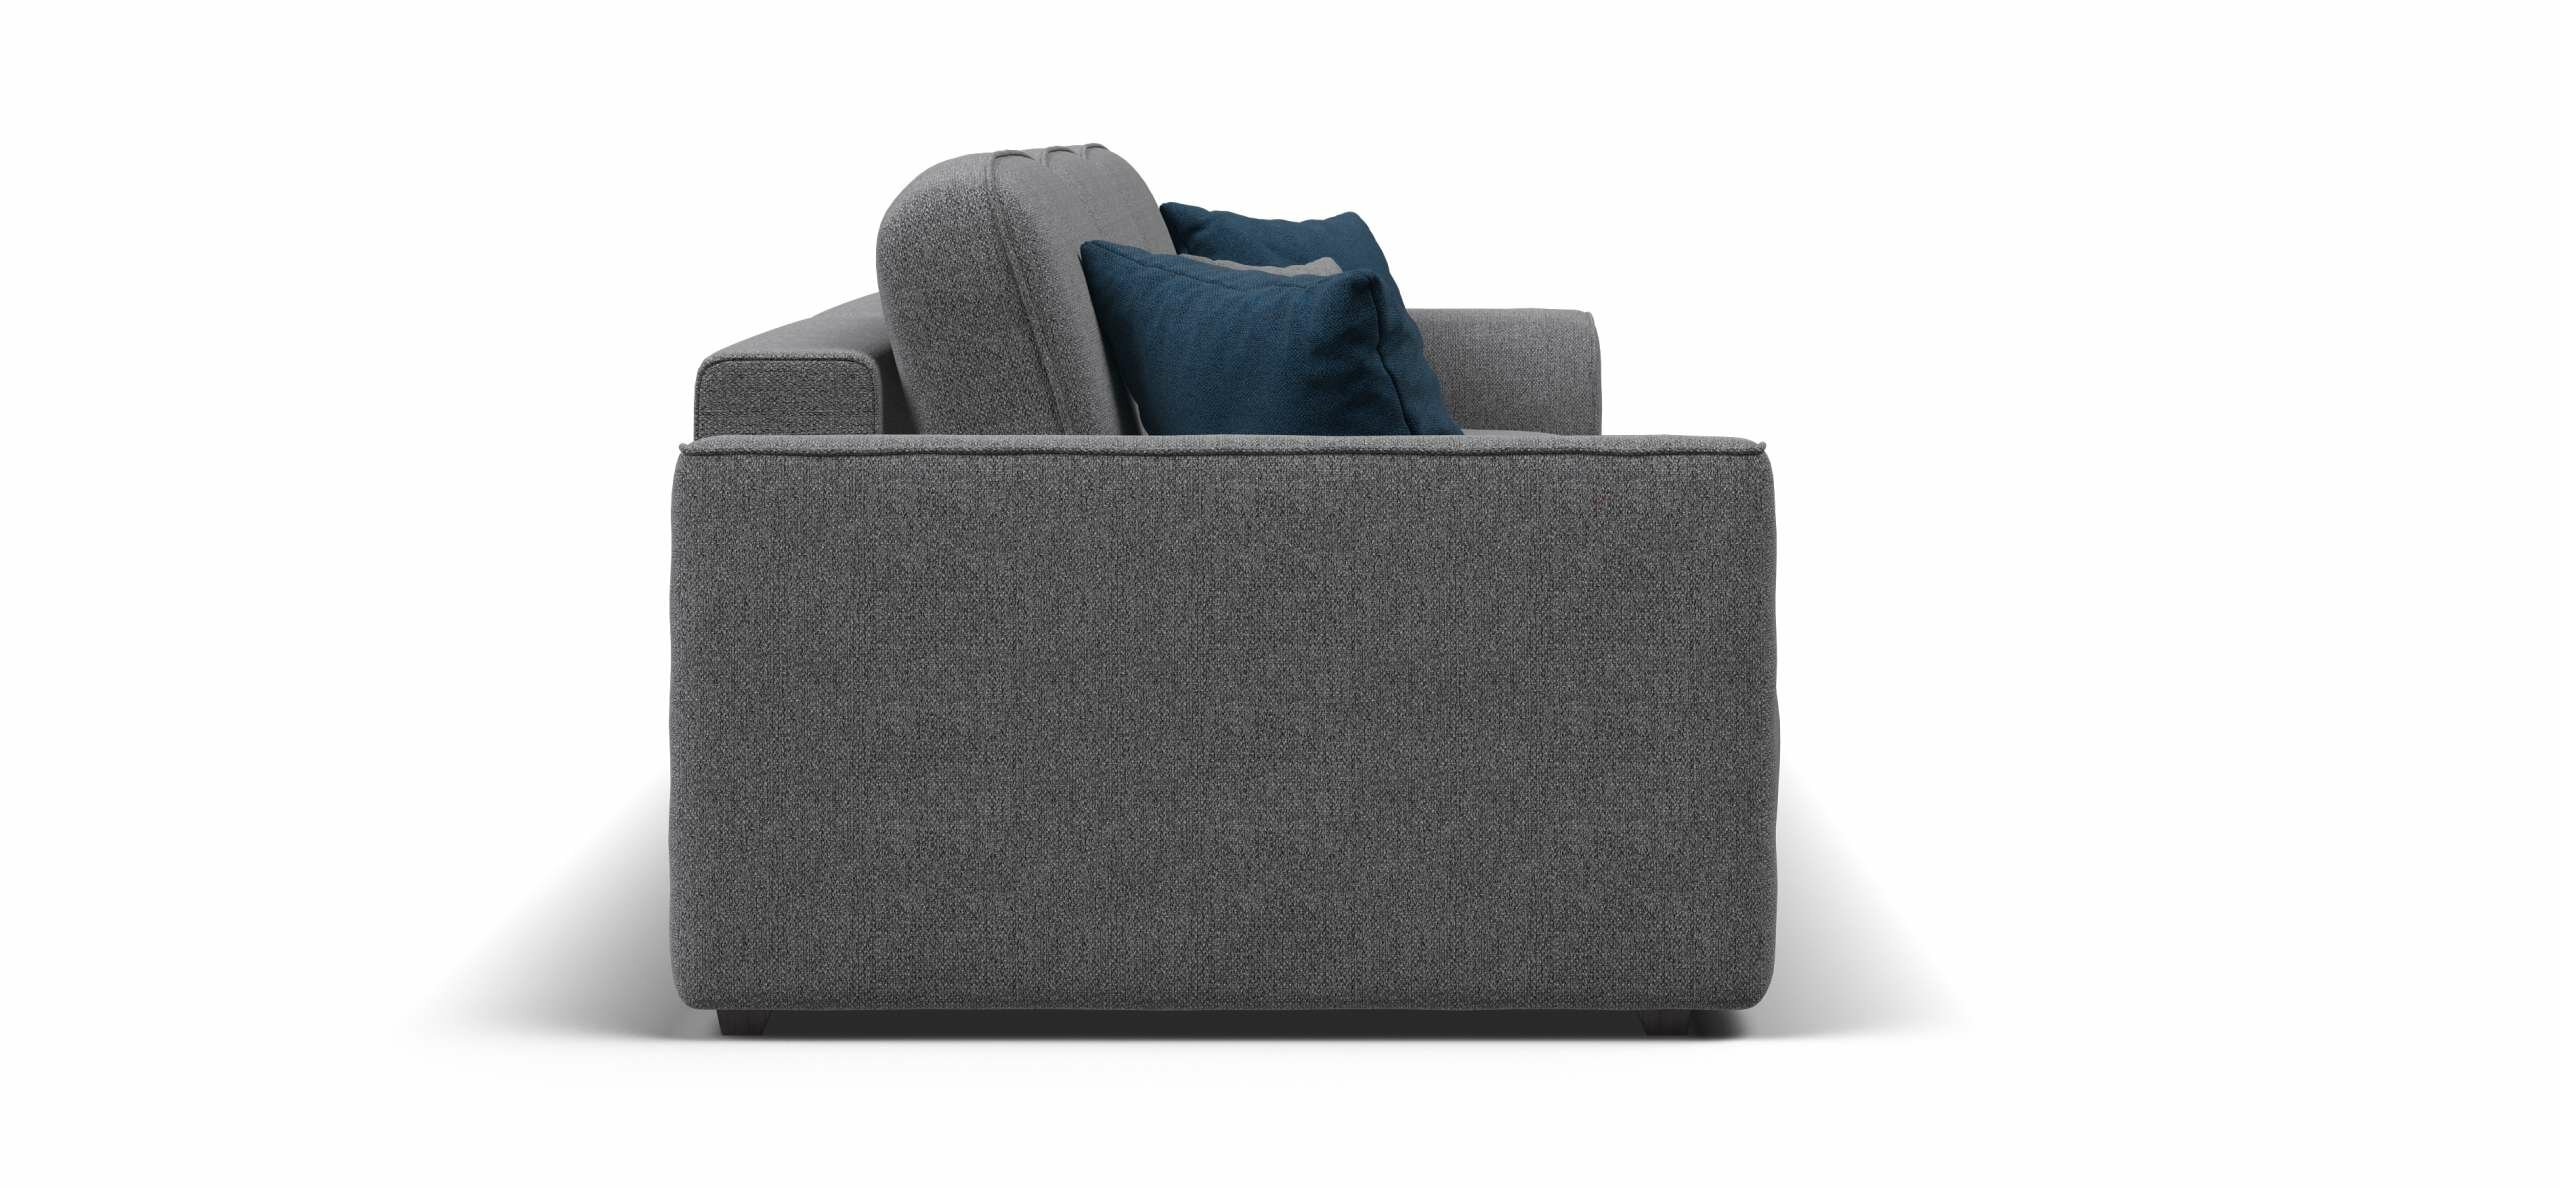 Уникальный диван-кровать KING MAX, с ящиками для хранения, еврокнижка, рогожка Malmo серый, 350х115х84 см - фотография № 3